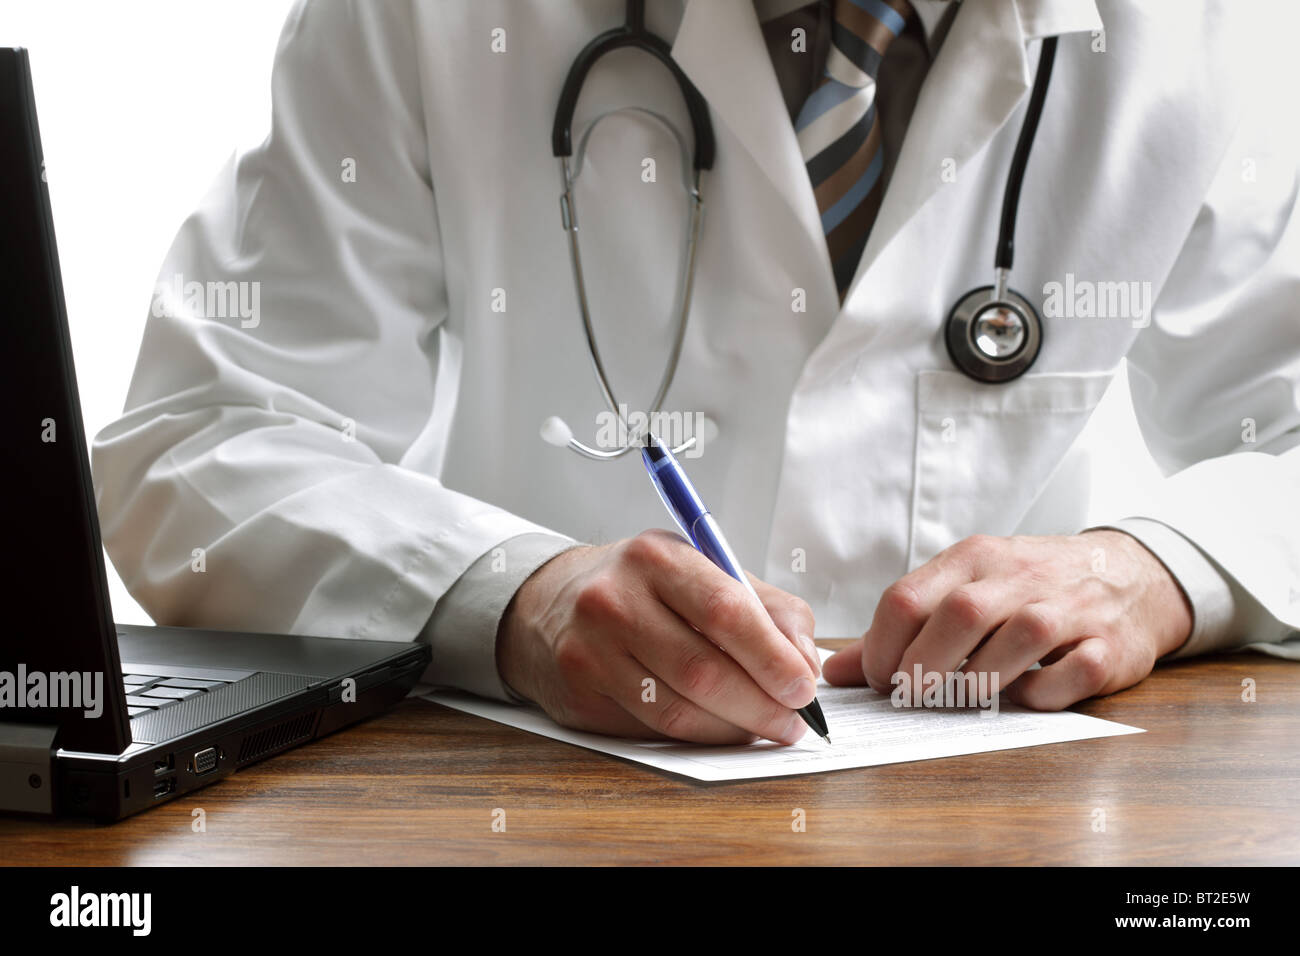 Doctor writing a prescription or medical examination notes Stock Photo